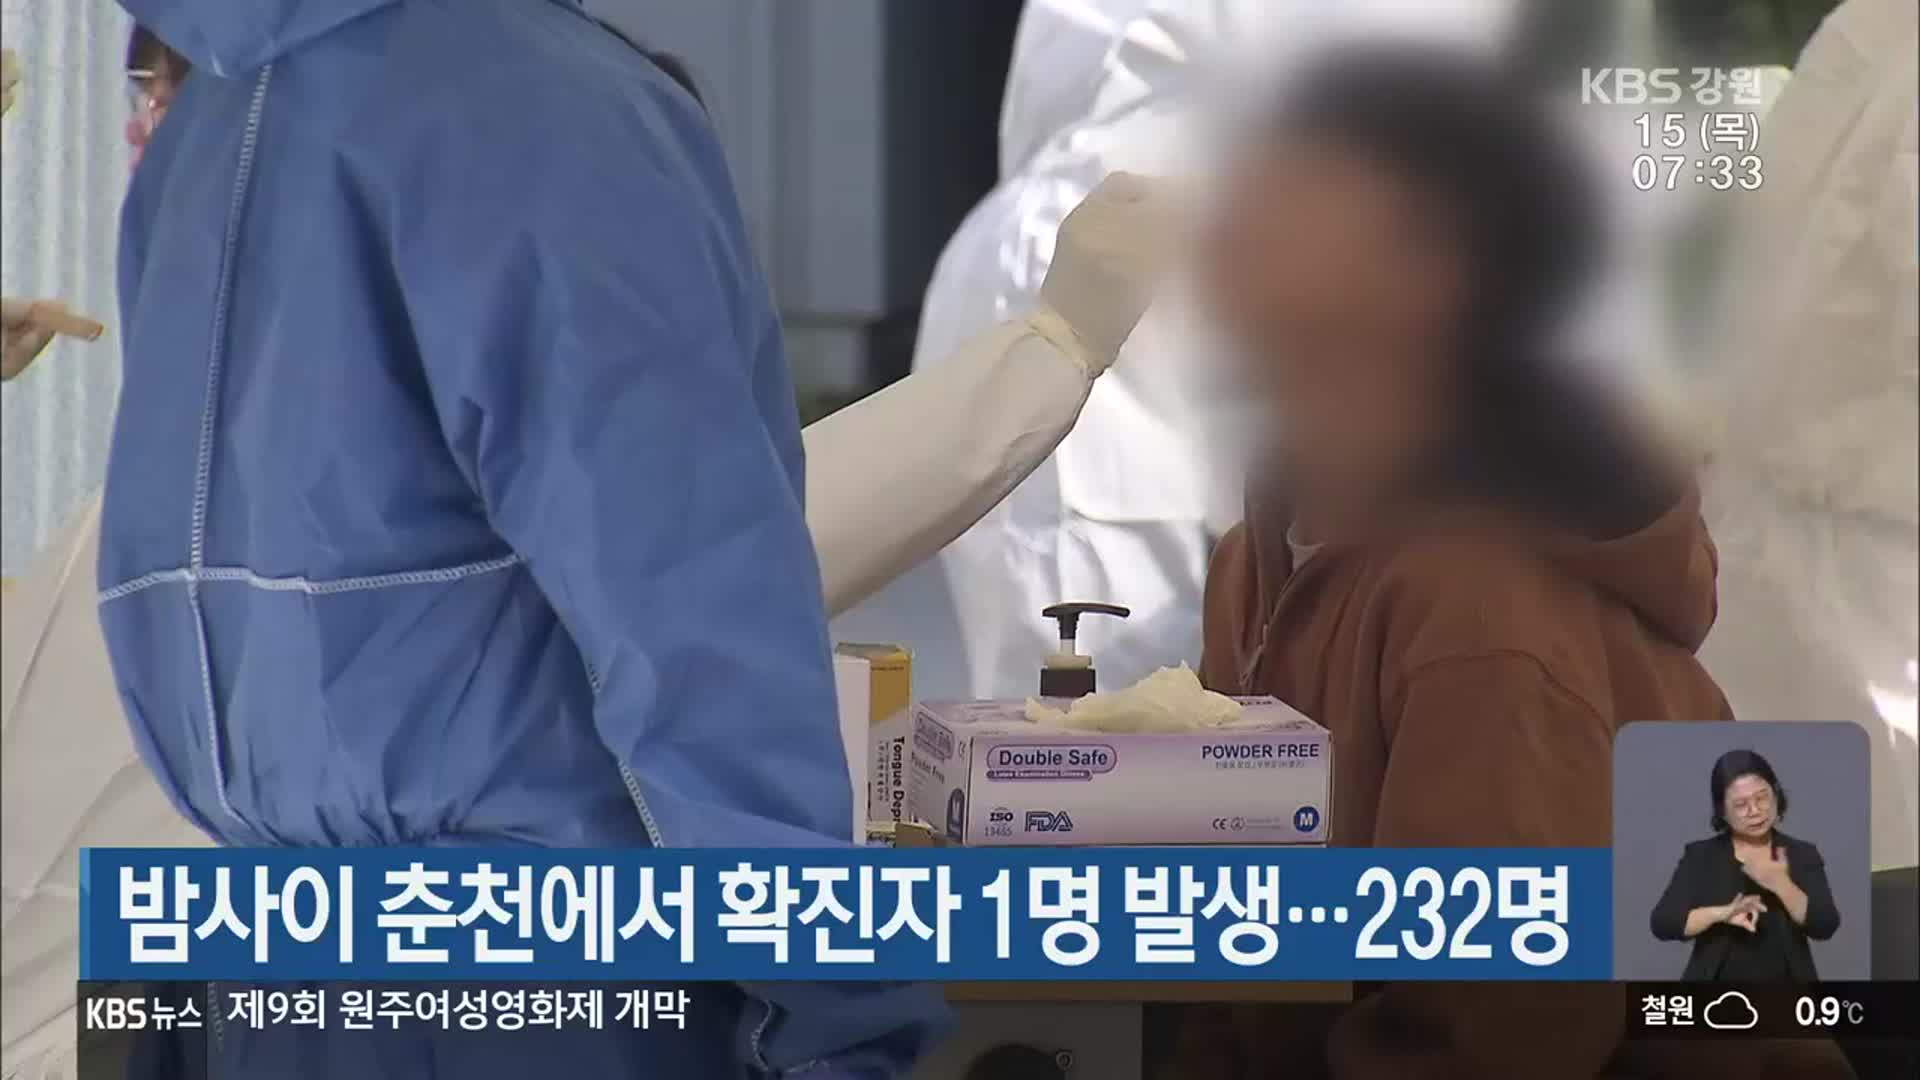 밤사이 춘천에서 확진자 1명 발생…232명